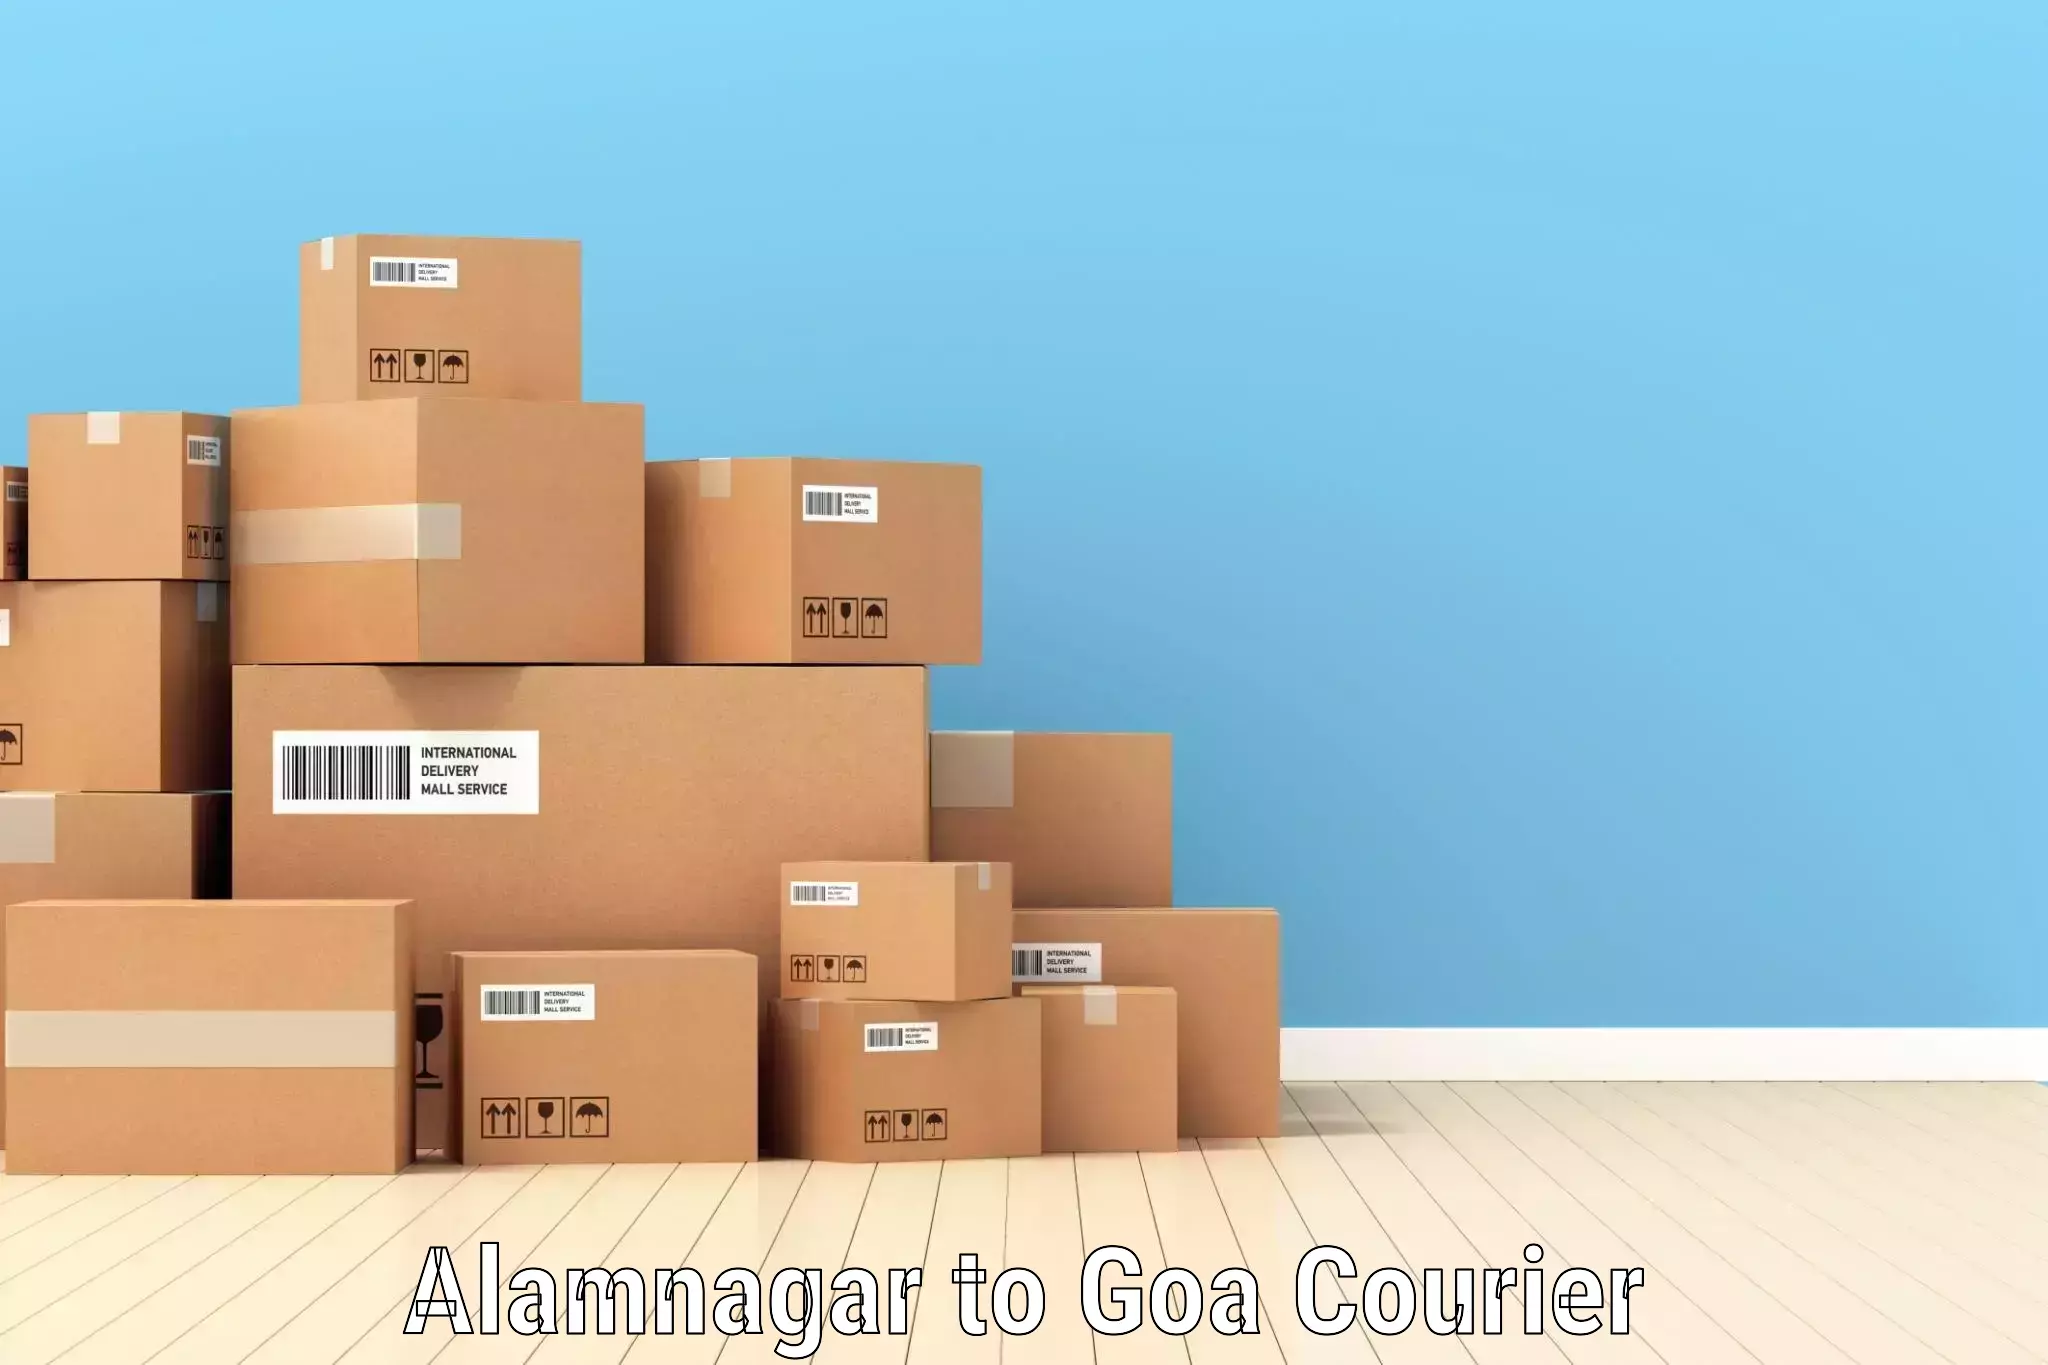 Customer-centric shipping Alamnagar to IIT Goa